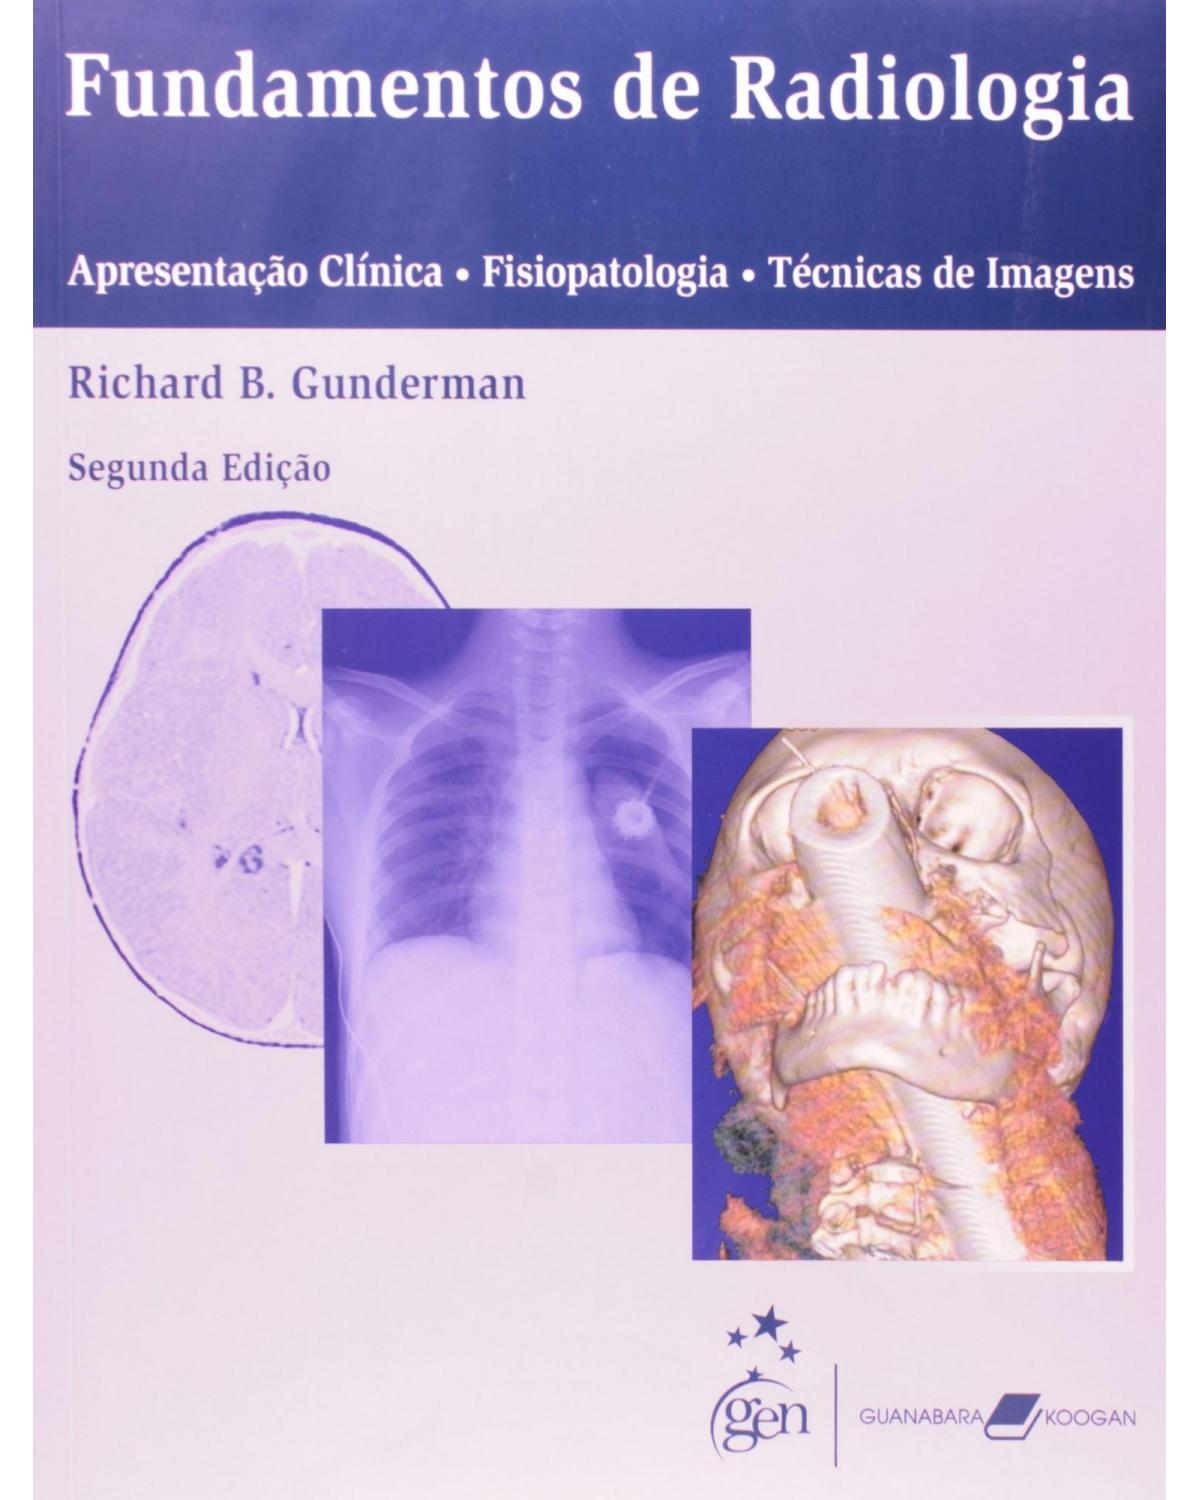 Fundamentos de radiologia - Apresentação clínica, fisiopatologia, técnicas de imagem - 2ª Edição | 2007